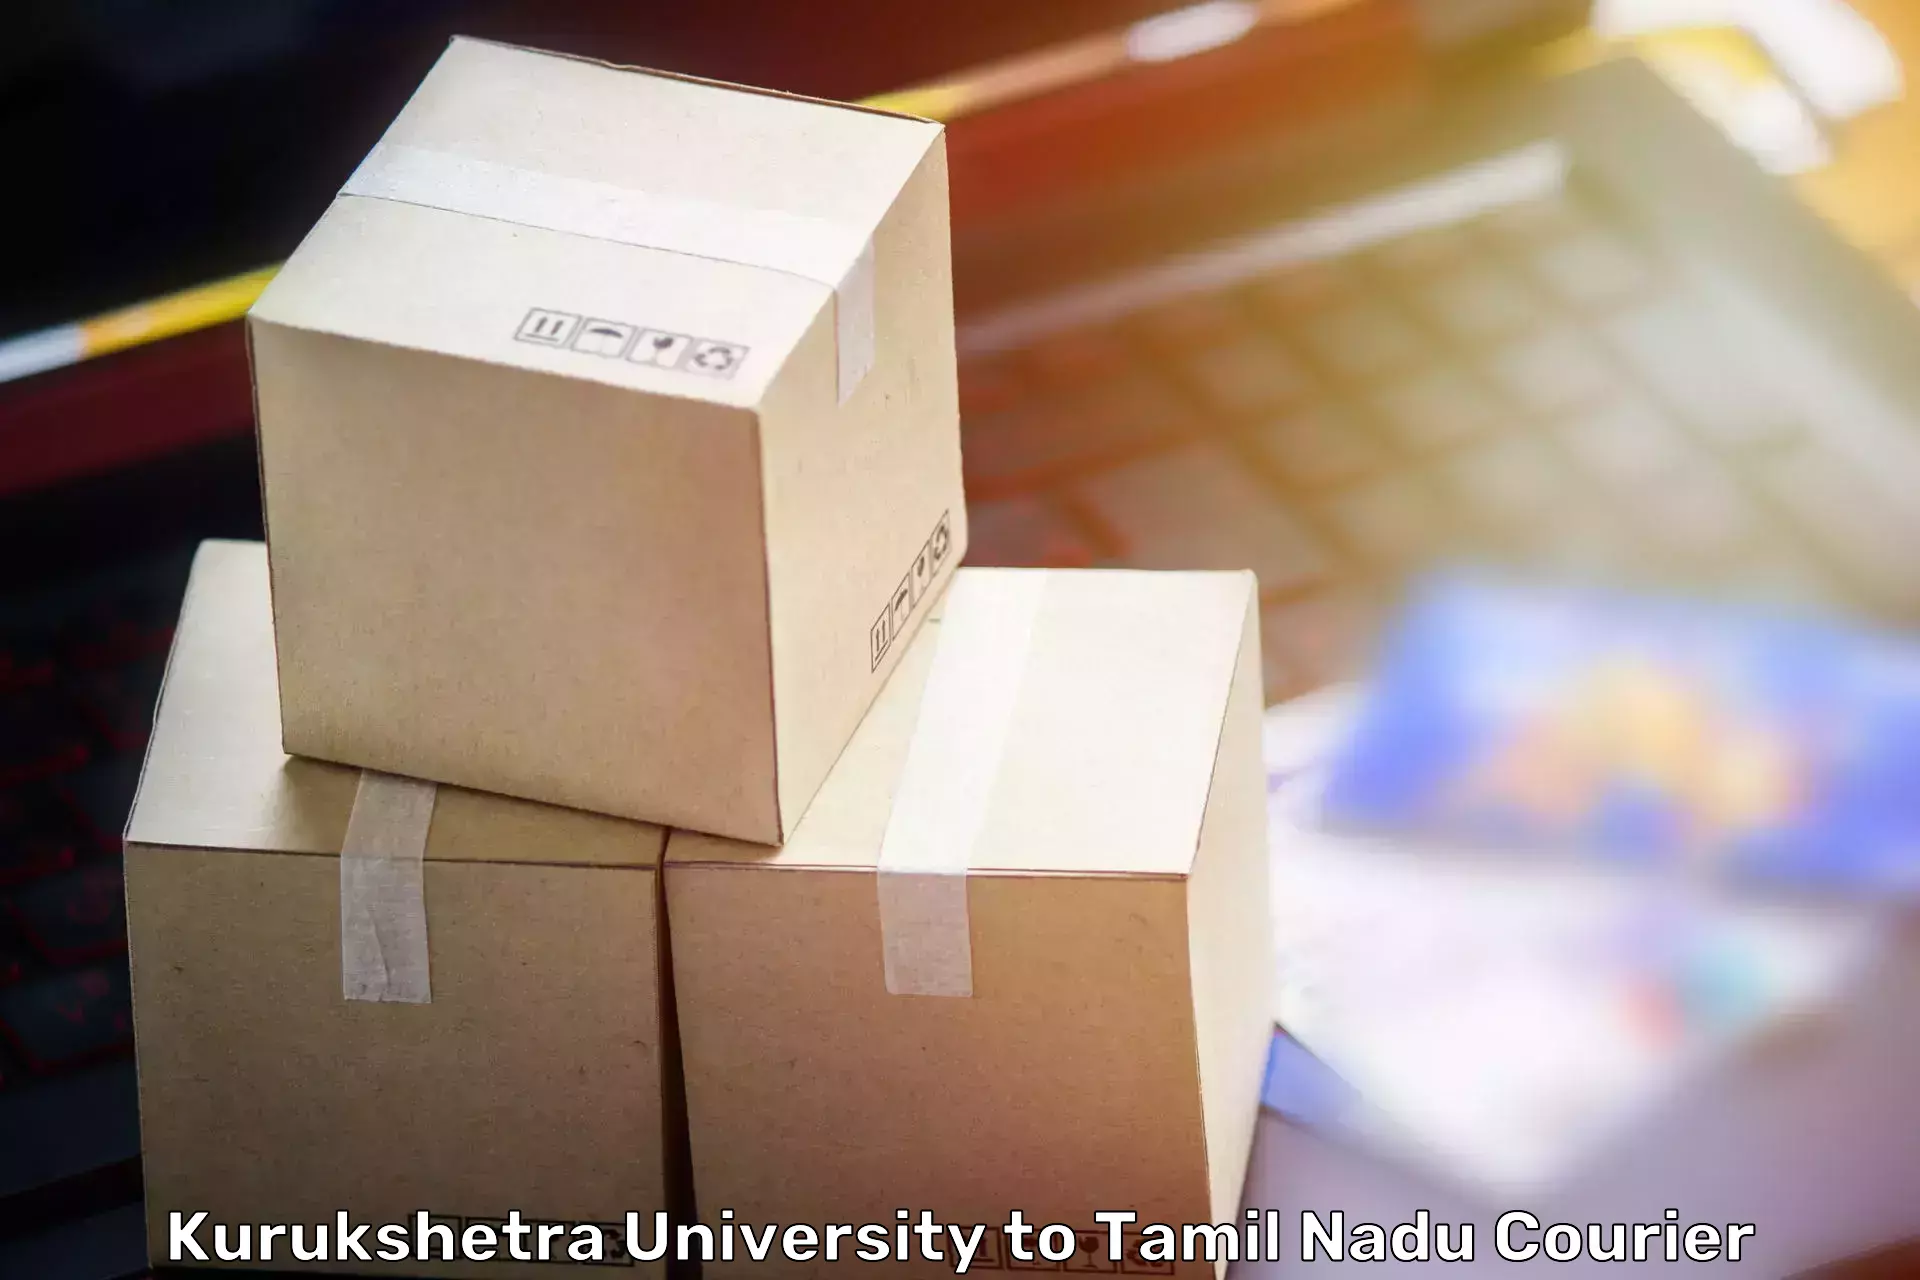 Stress-free moving Kurukshetra University to Devakottai